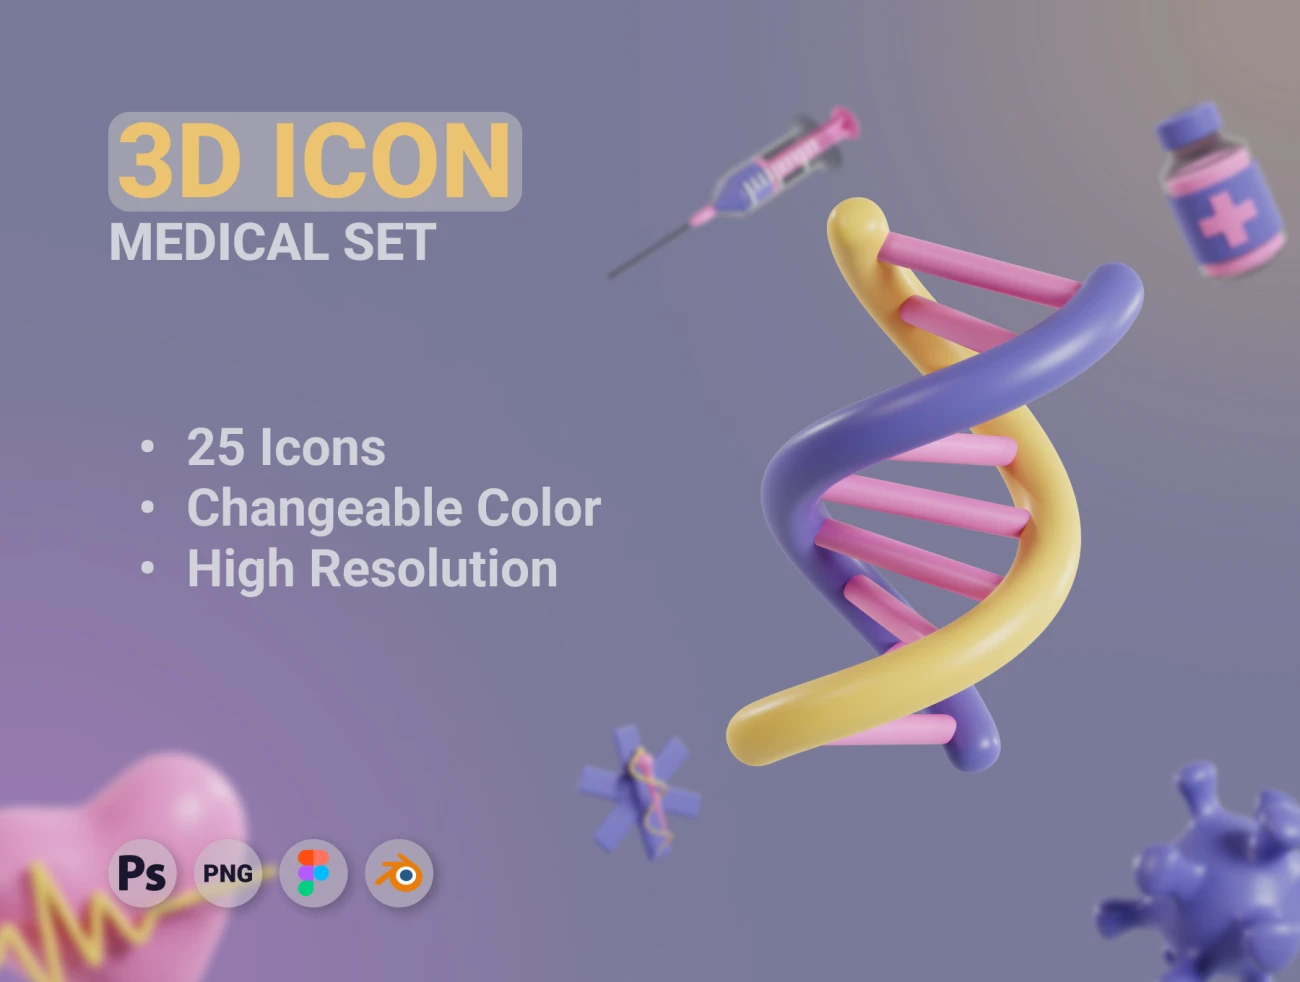 25款3D医疗图标素材模型 3D Medical Icons set .blender .psd .figma插图1